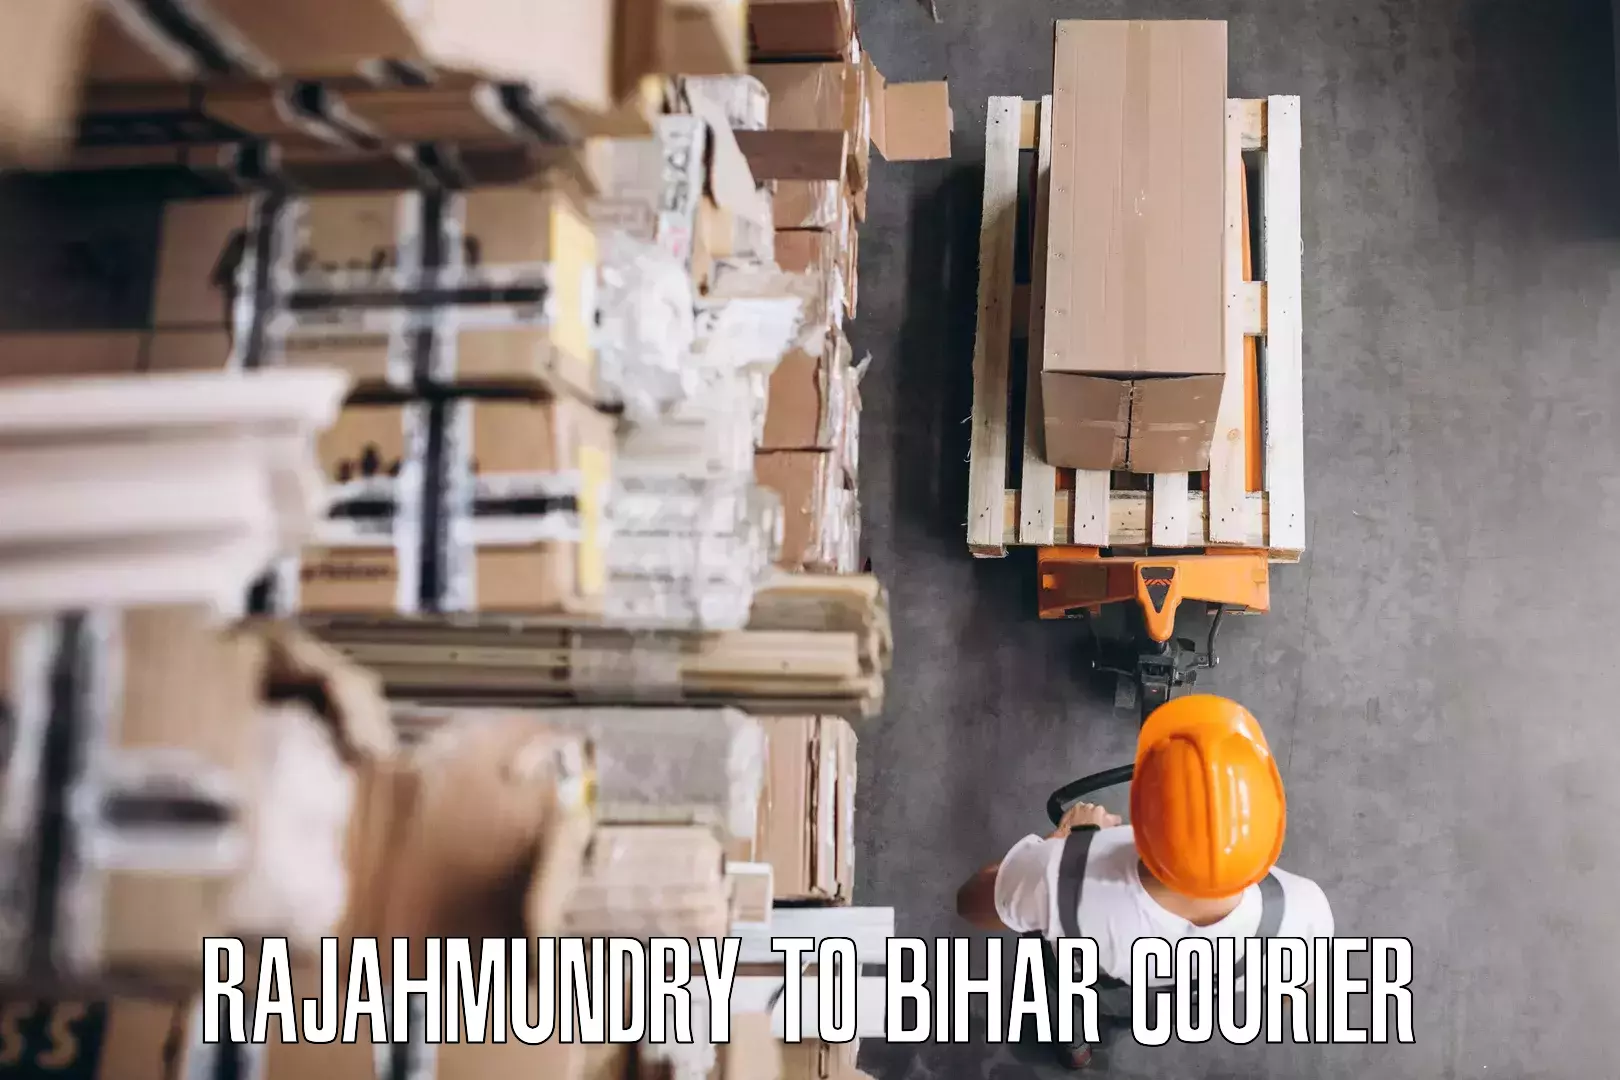 Furniture delivery service Rajahmundry to Dighwara